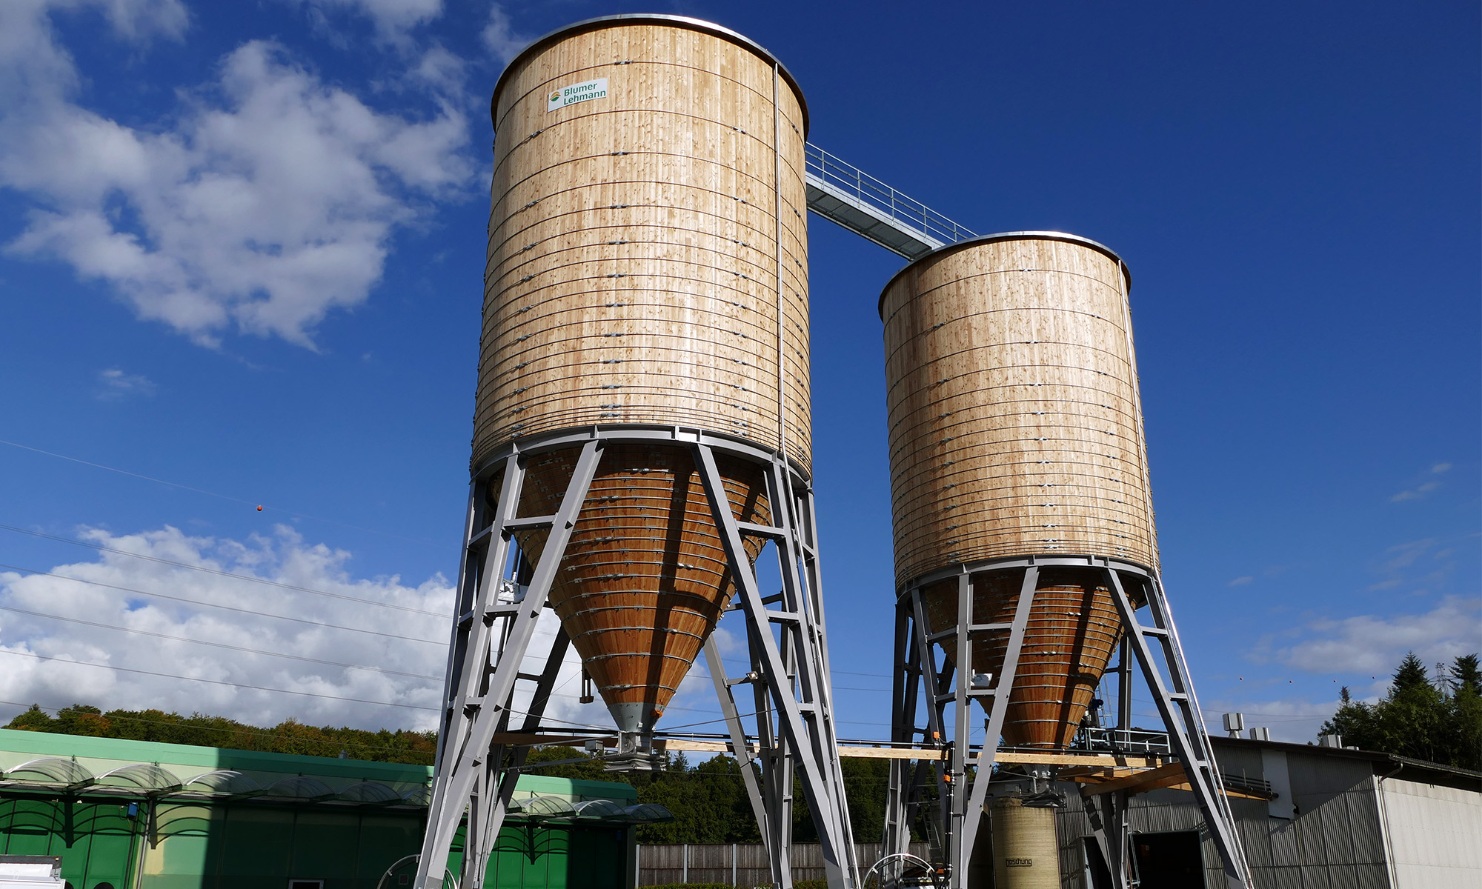 Installation complète à Gesigen, près de Spiez, composée de deux silos ronds en bois reliés par une passerelle de toit en acier